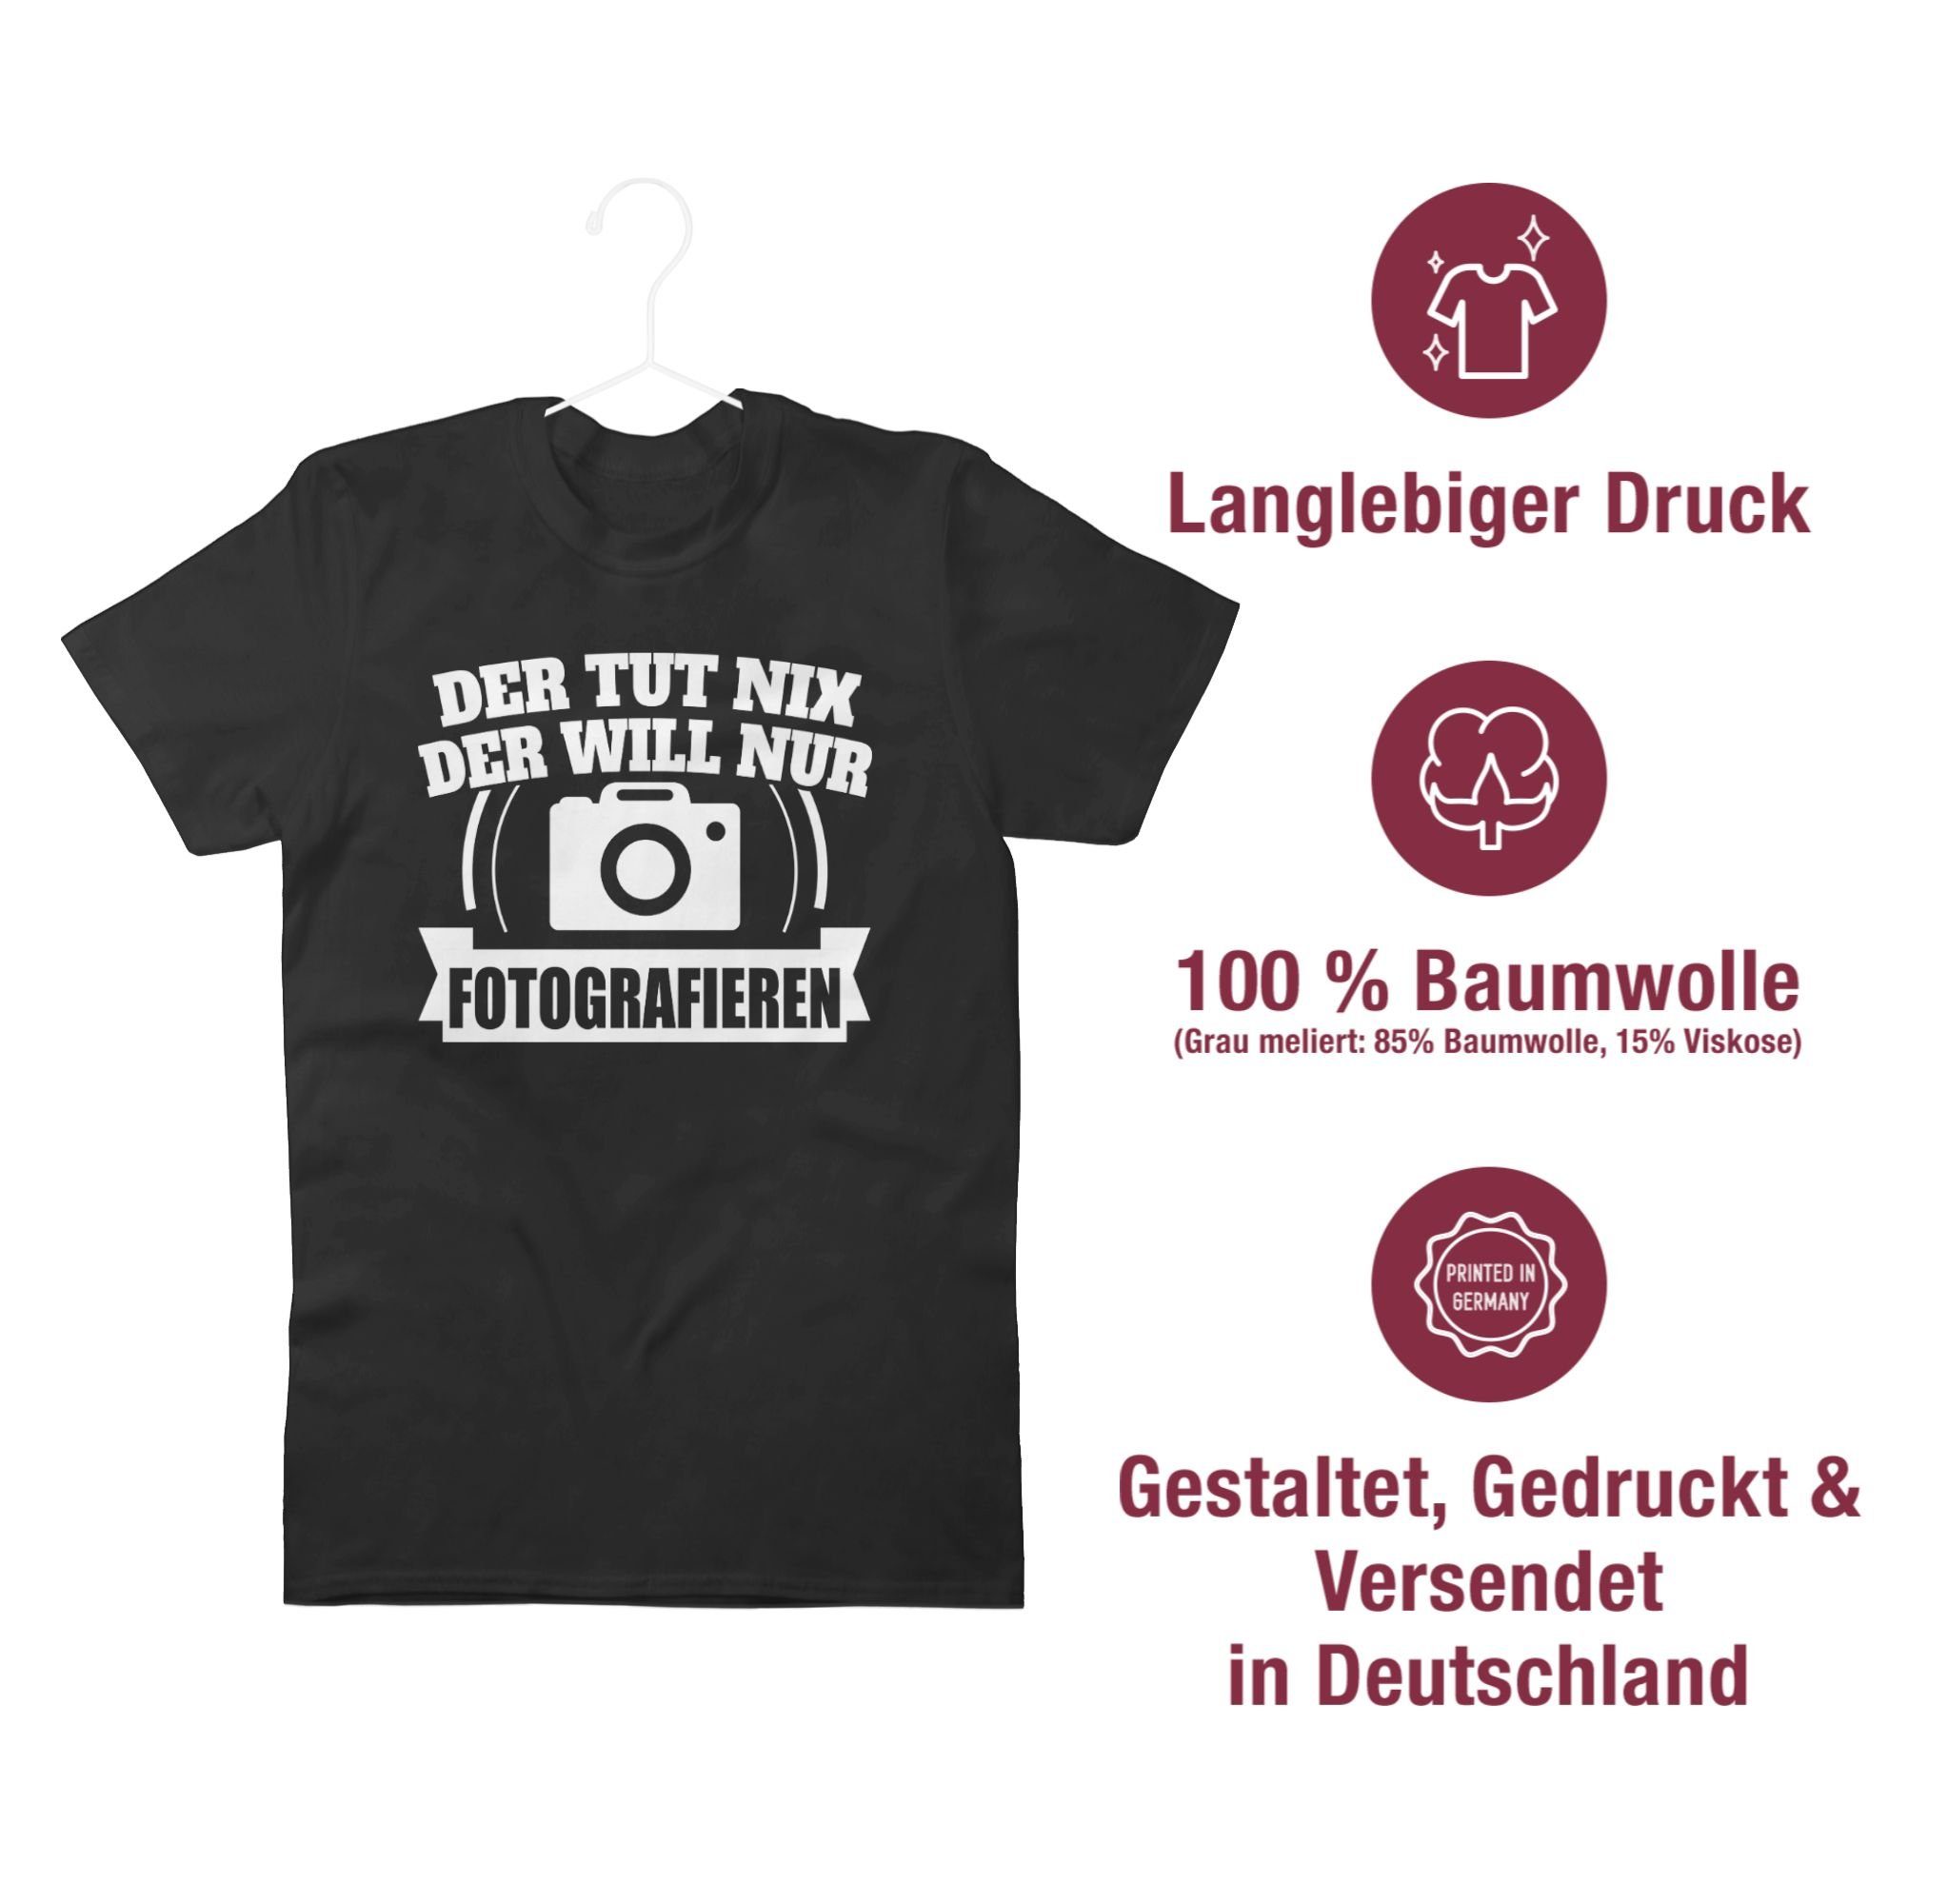 T-Shirt Fotografieren Spruch der will Schwarz Statement 1 Sprüche Der nur nix Shirtracer tut mit